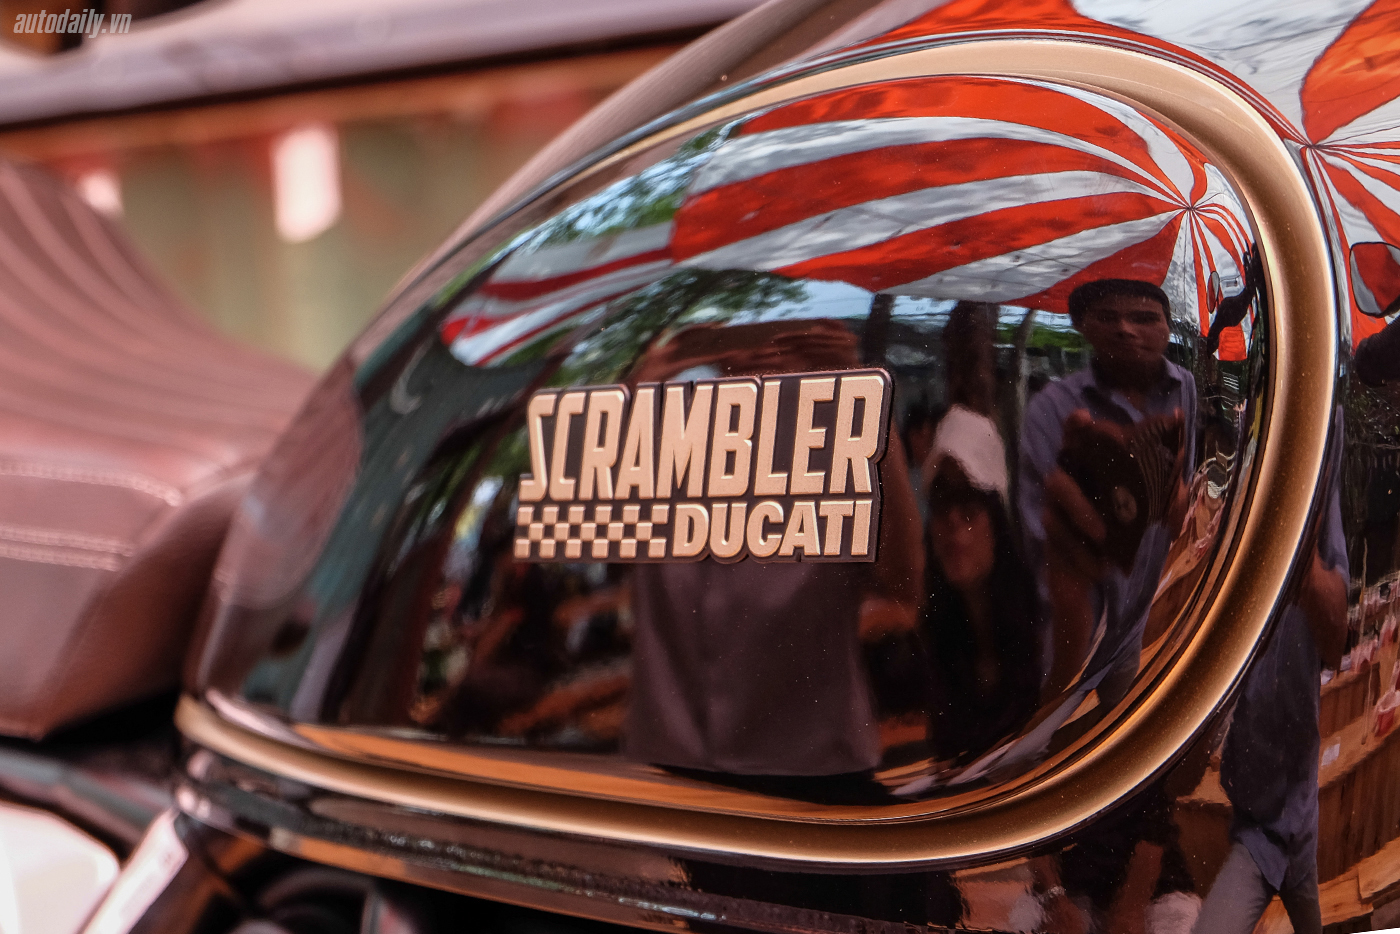 Ảnh chi tiết Ducati Scrambler Cafe Racer đầu tiên tại Việt Nam